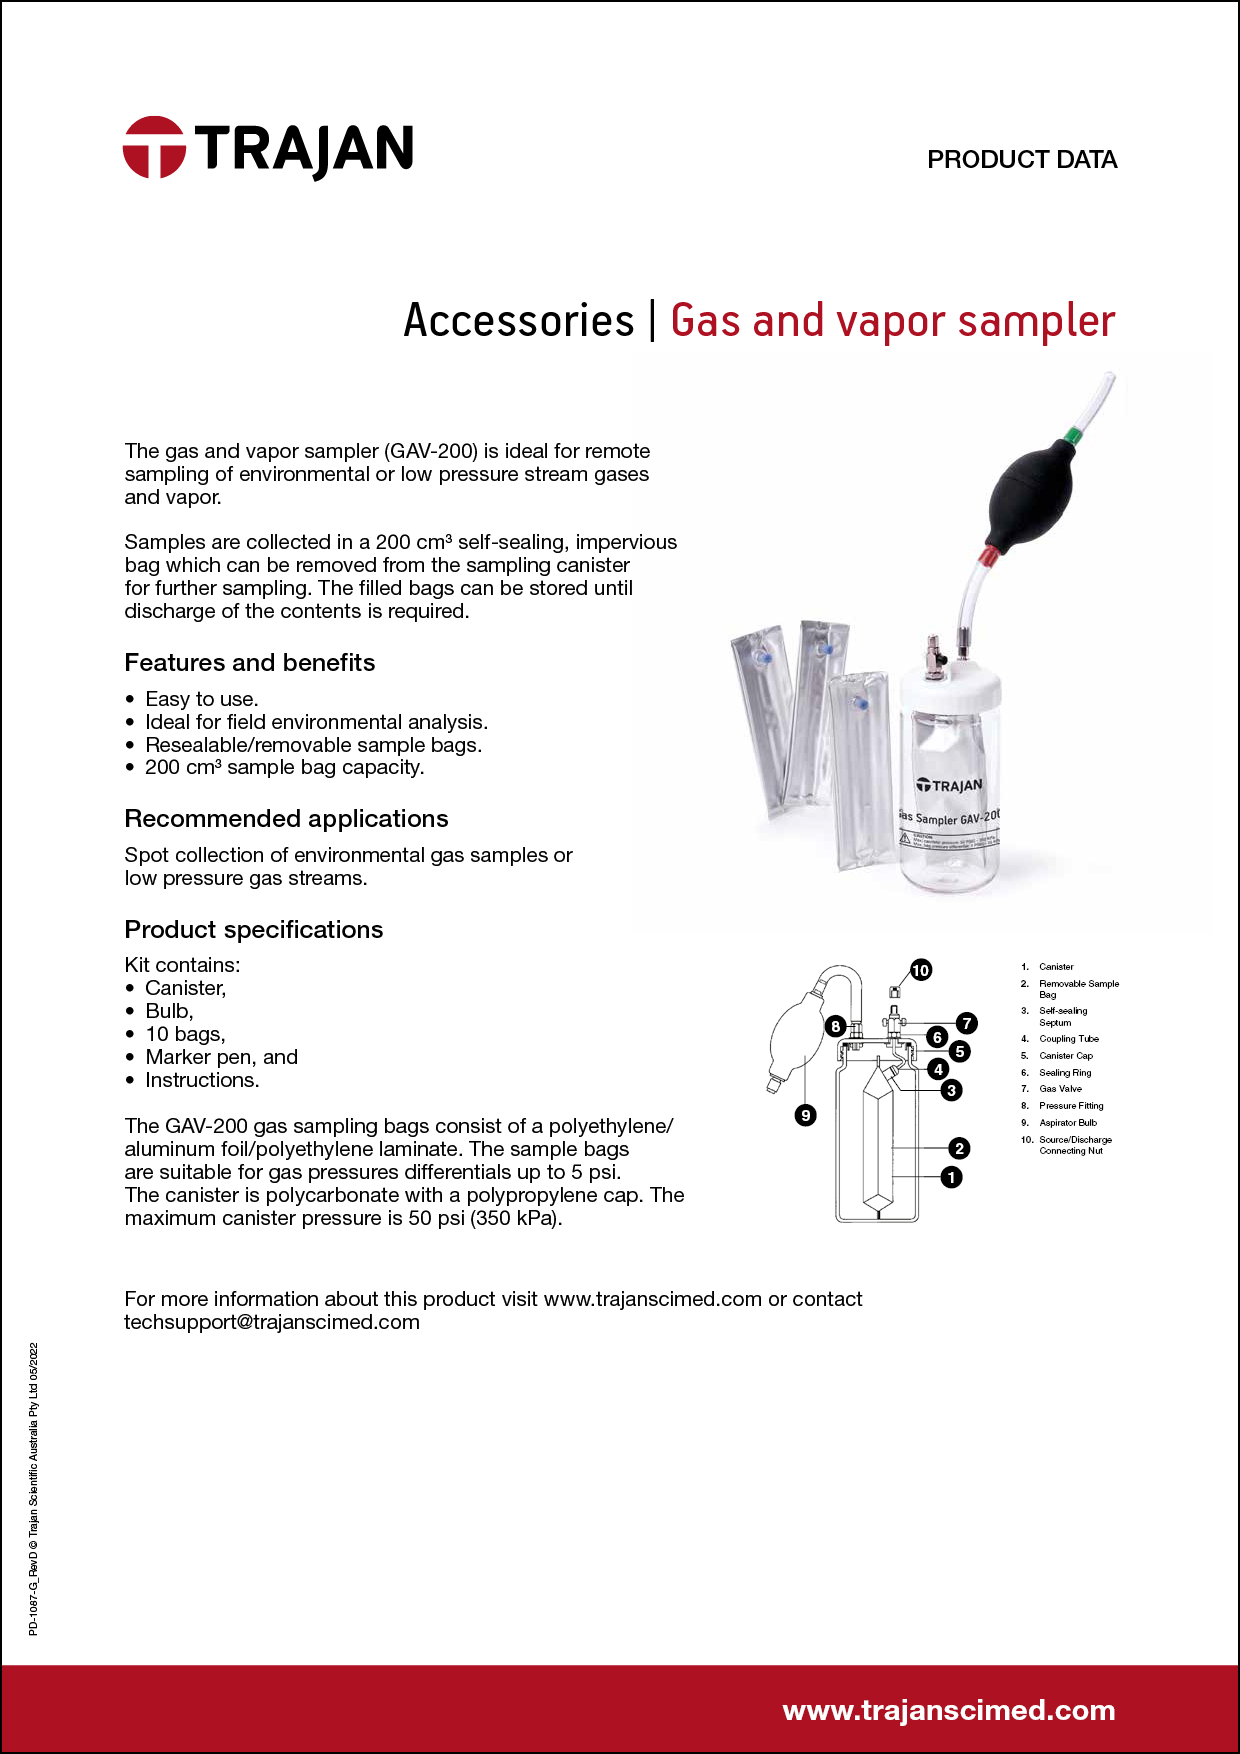 Product Data Sheet - Gas and vapor sampler